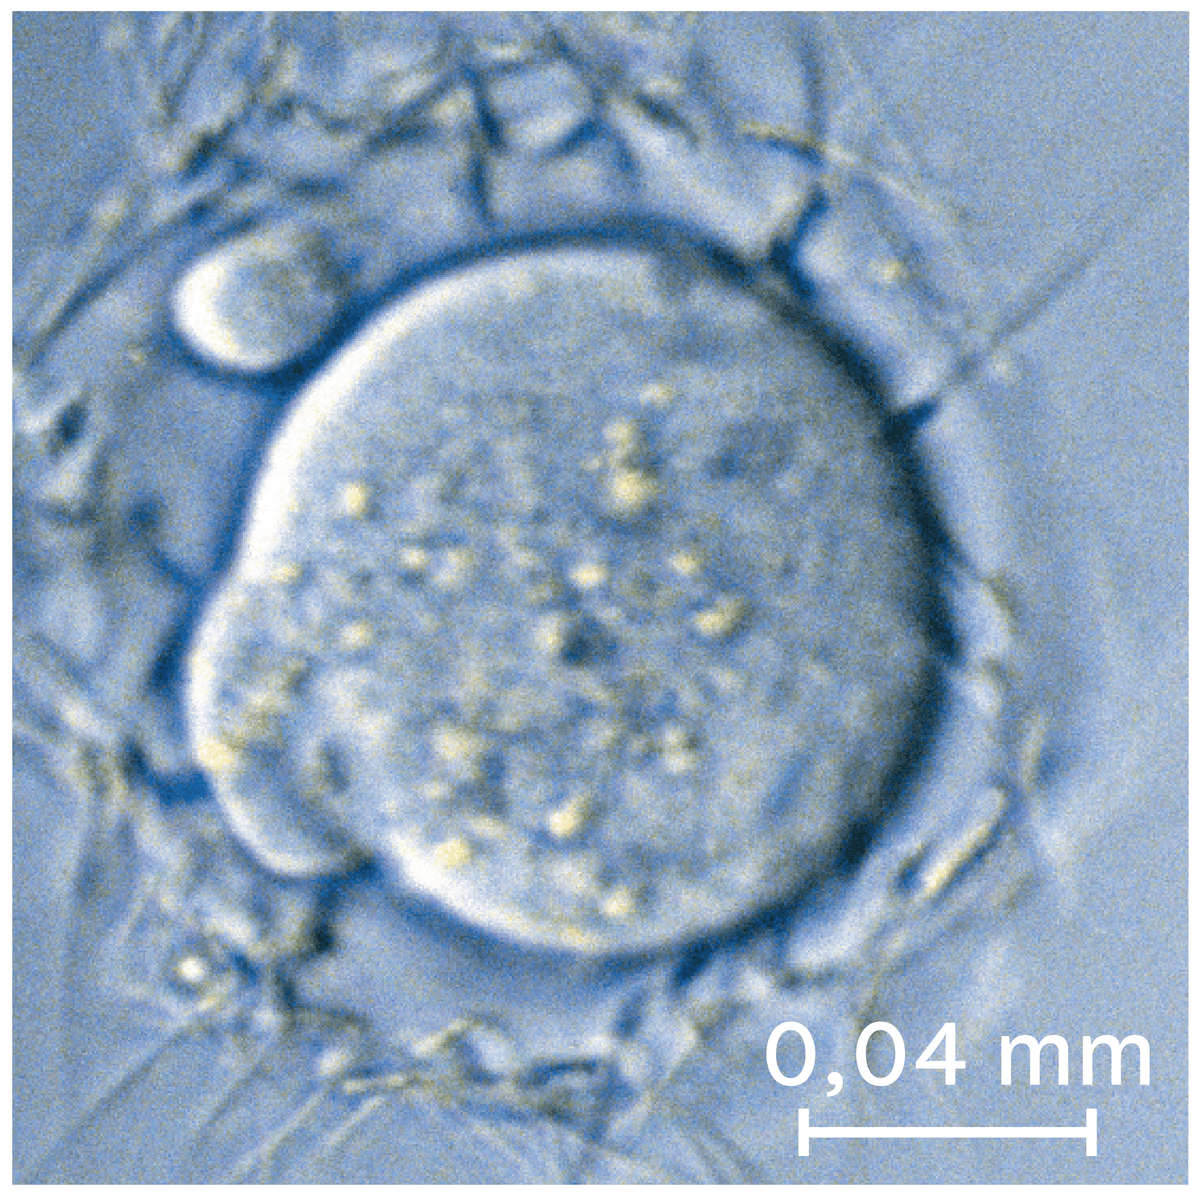  Un ovule observé au microscope optique.